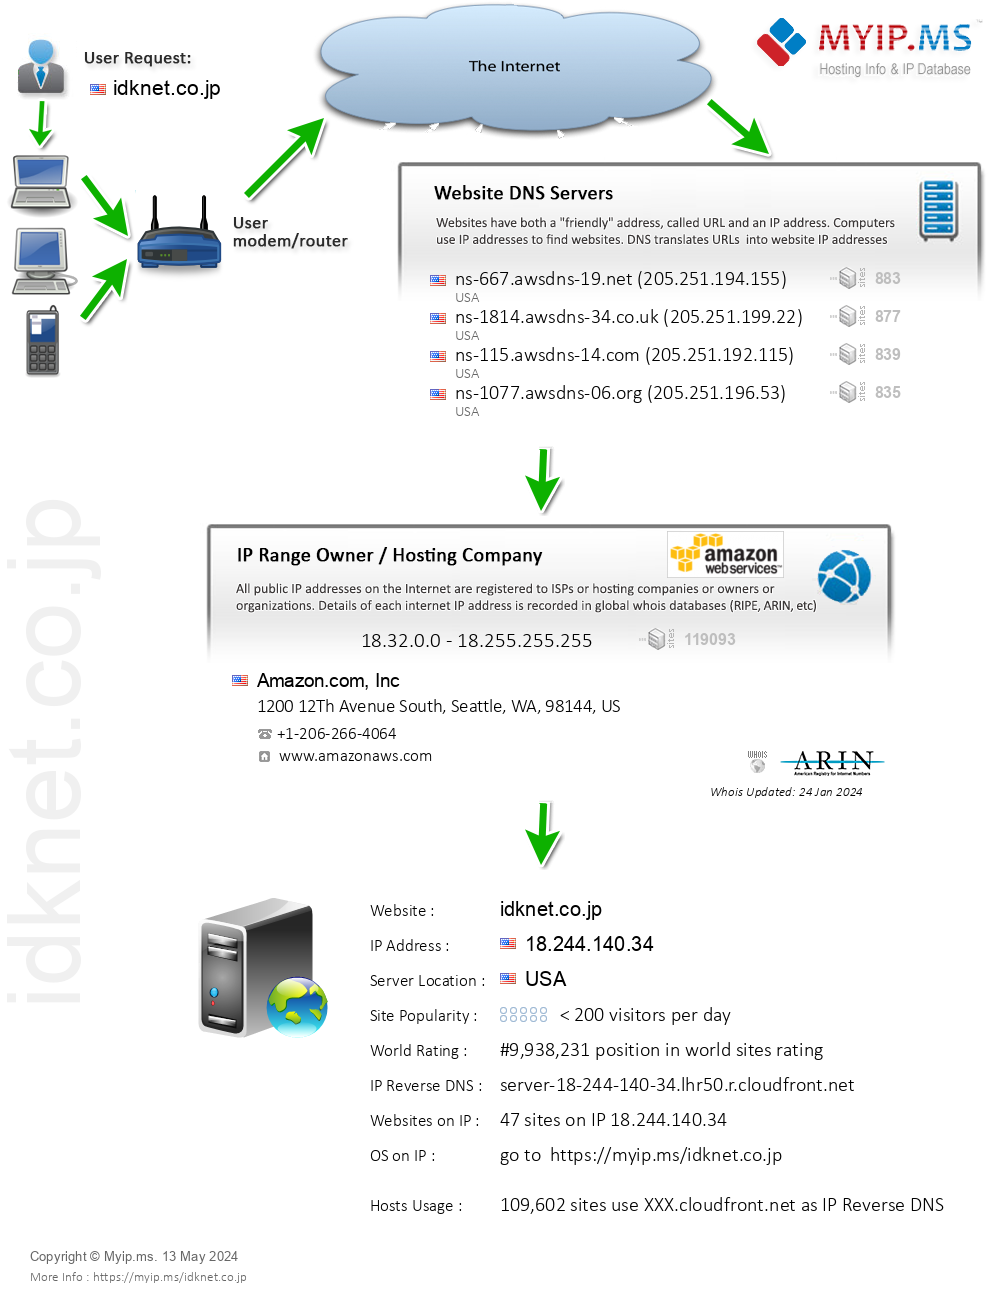 Idknet.co.jp - Website Hosting Visual IP Diagram